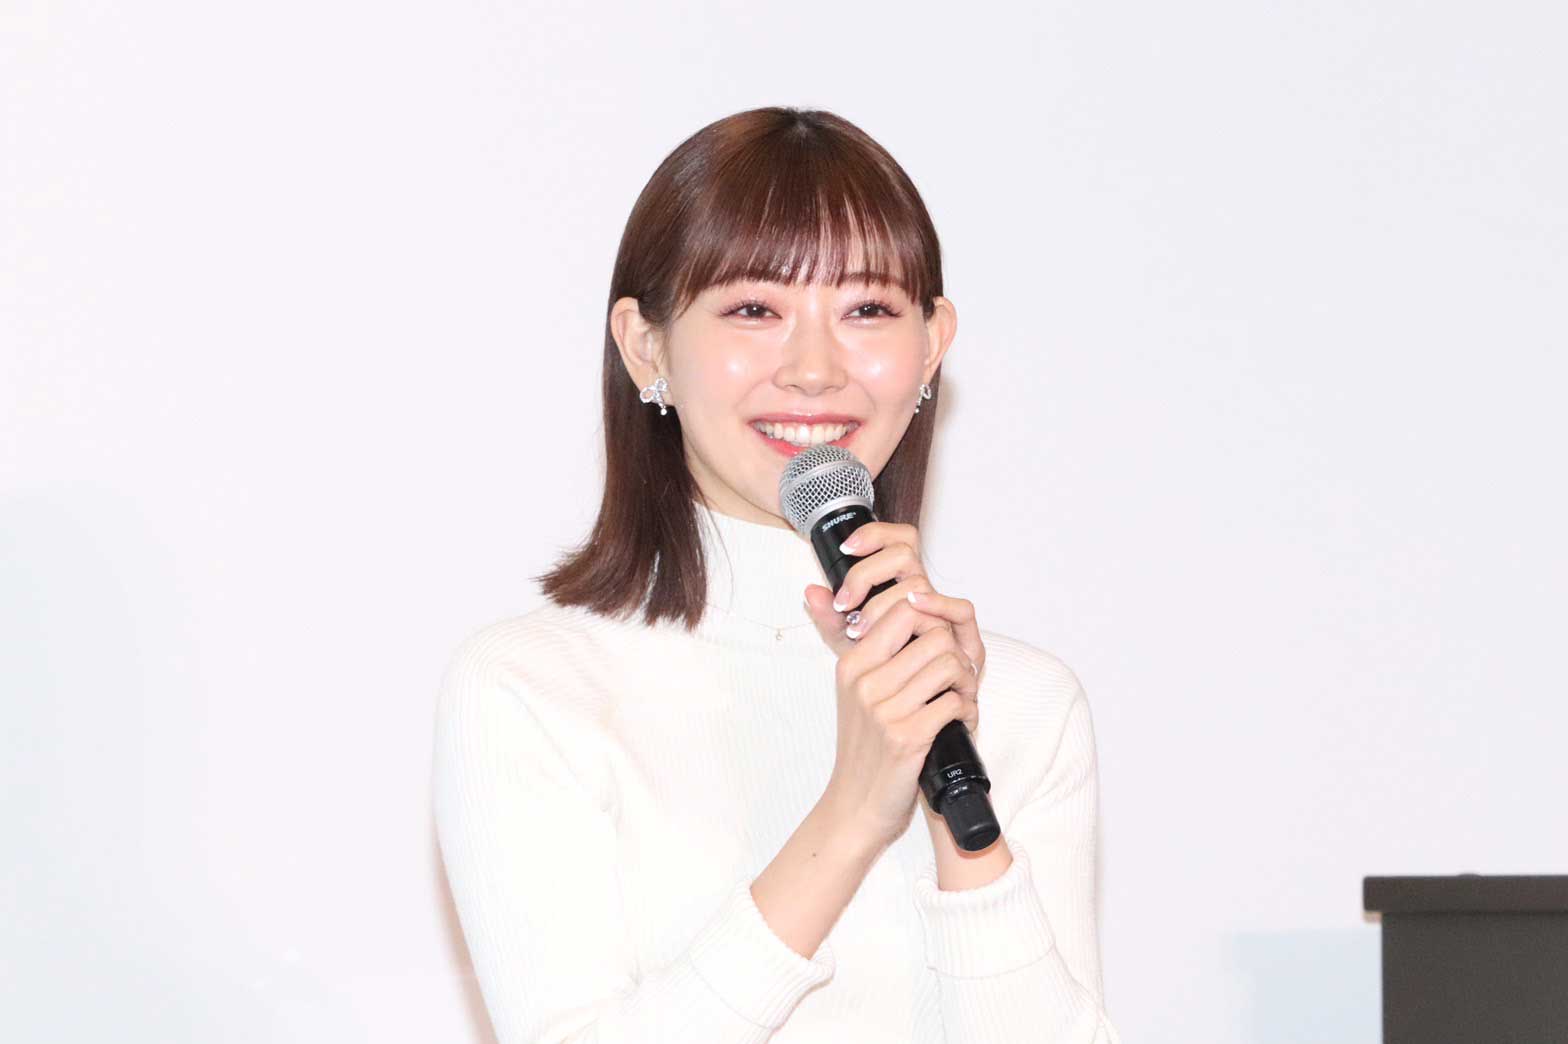 渡辺美優紀、NMB48時代の世界遺産・平城宮跡ライブ回想「めちゃくちゃ心に残っています」